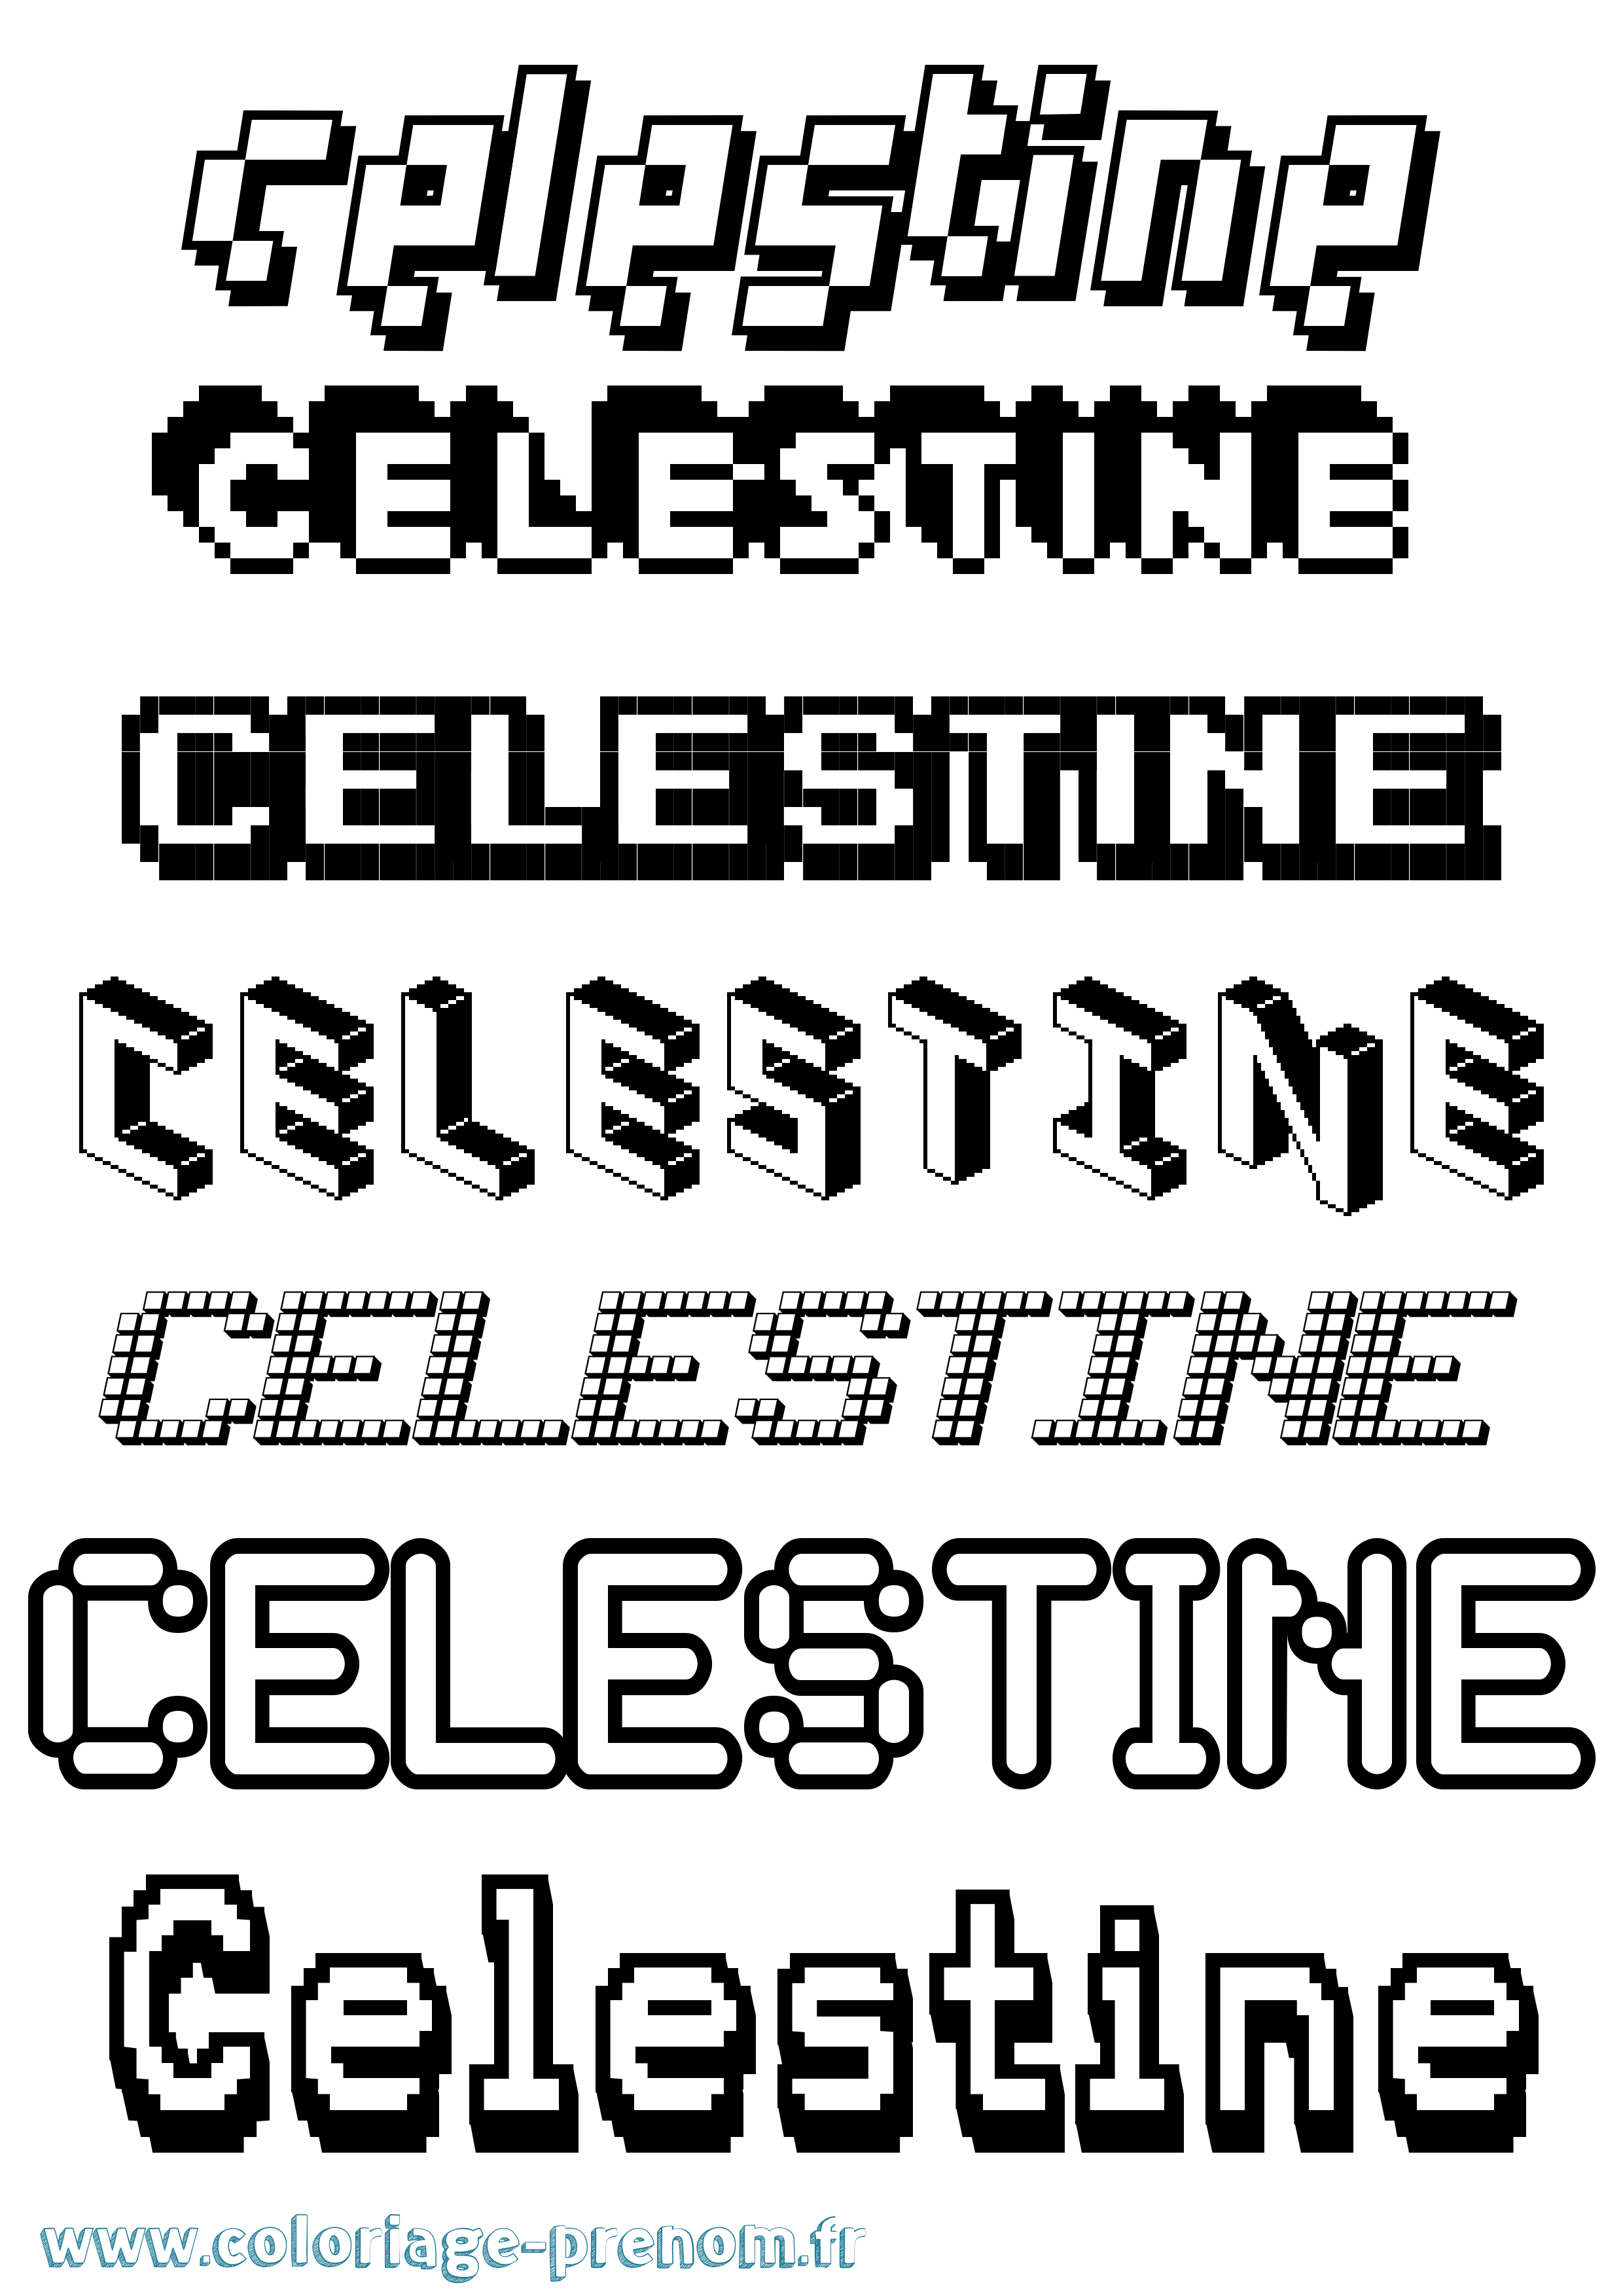 Coloriage prénom Celestine Pixel